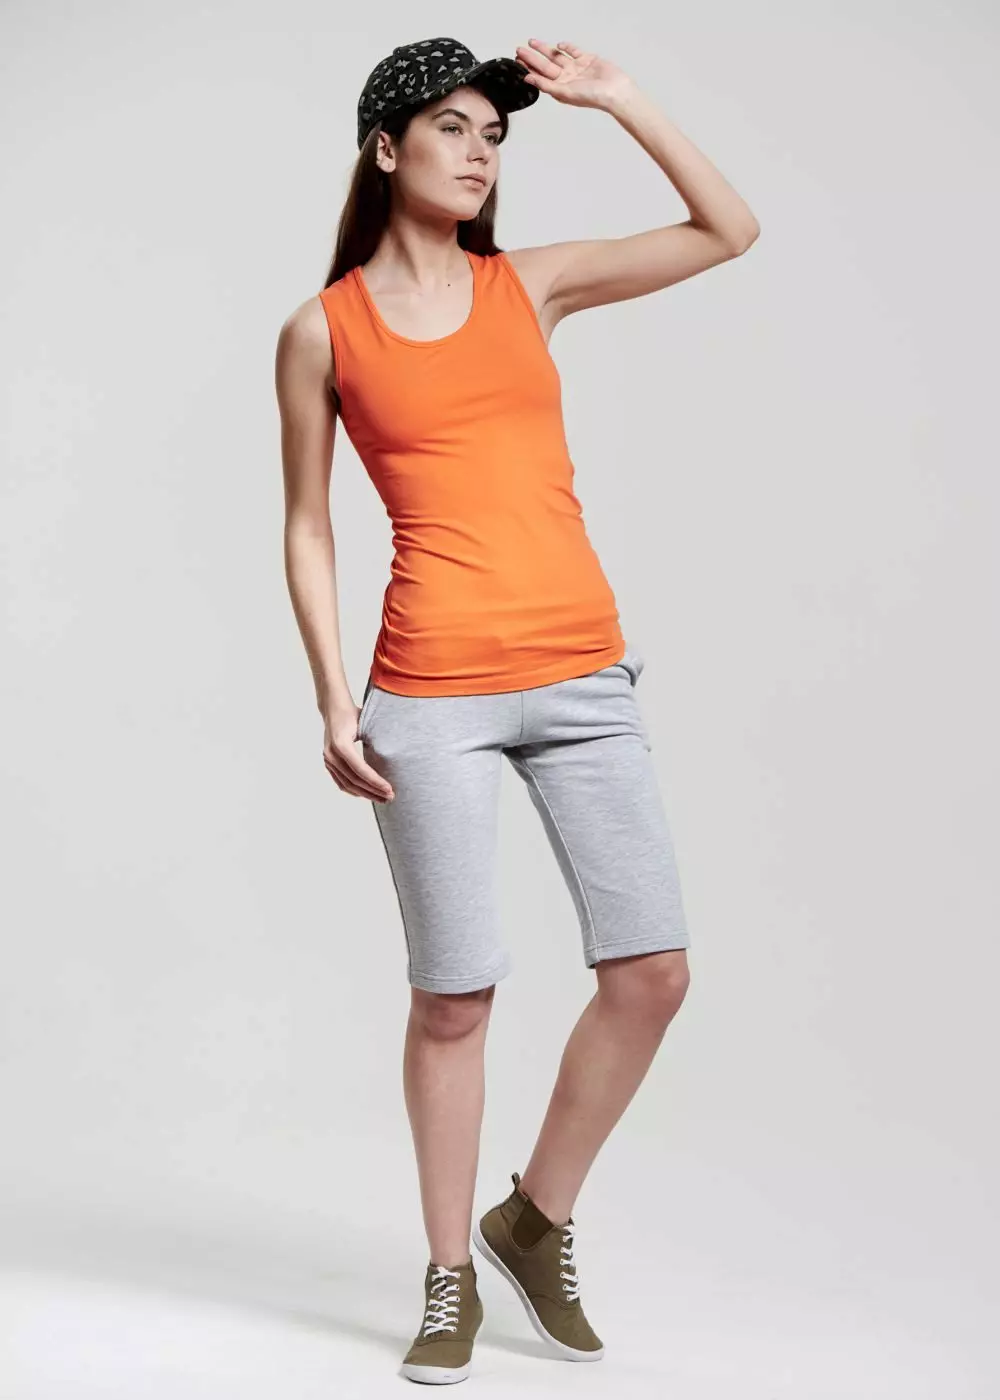 Sports shorts (84 billeder): Kort kvindelige sportsmodeller, shorts nederdel, stram, sort, dragt, strikket 13304_23